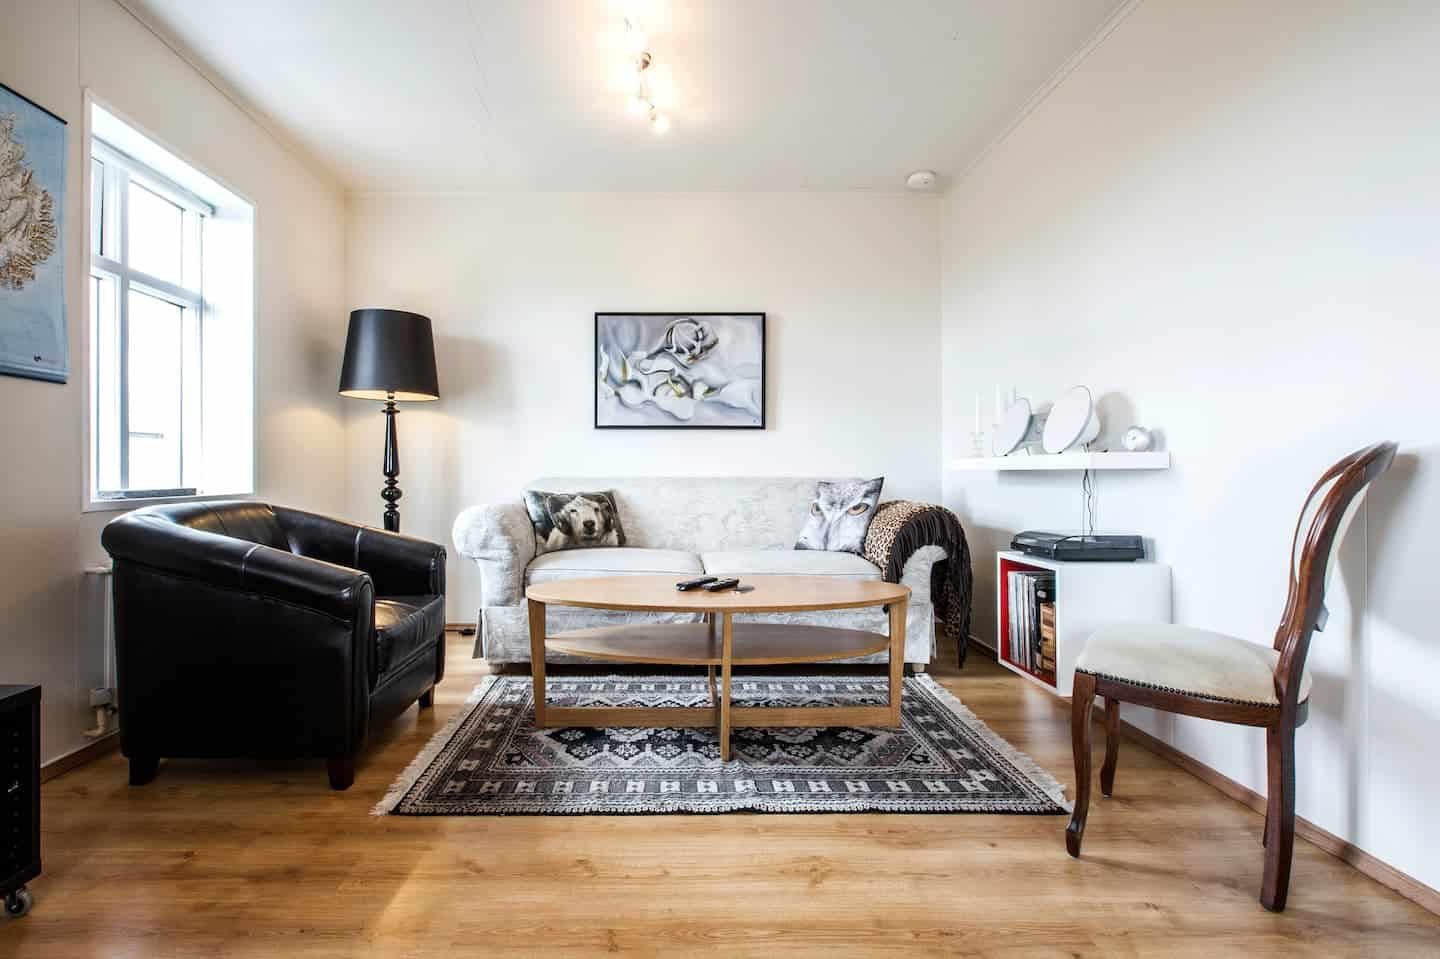 Image of Airbnb rental in Reykjavik, Iceland